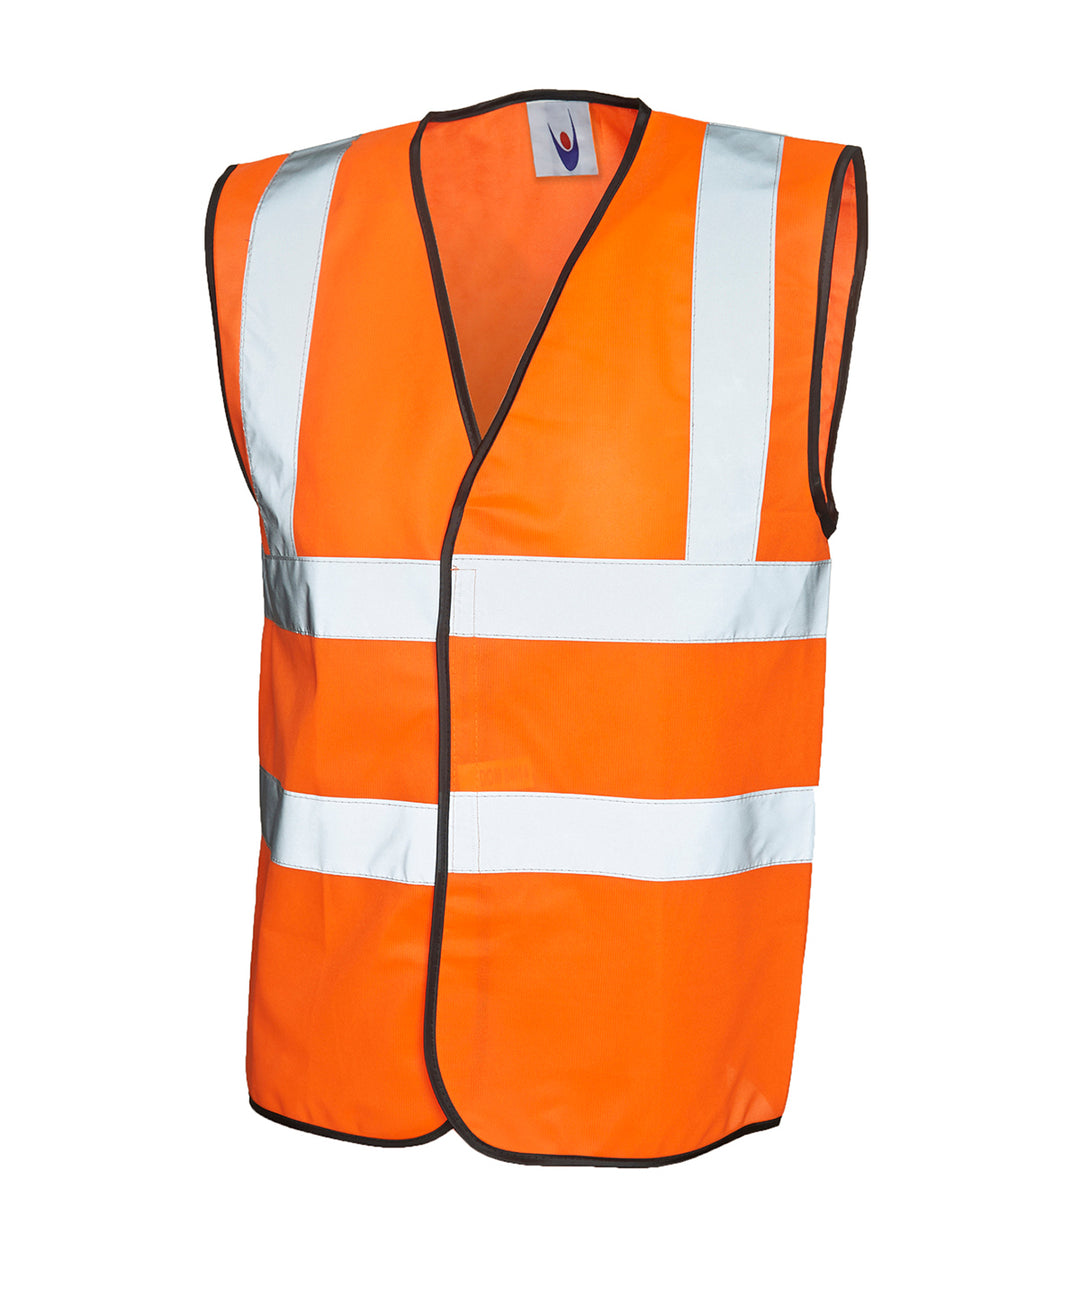 Sleeveless Safety Waist Coat orange